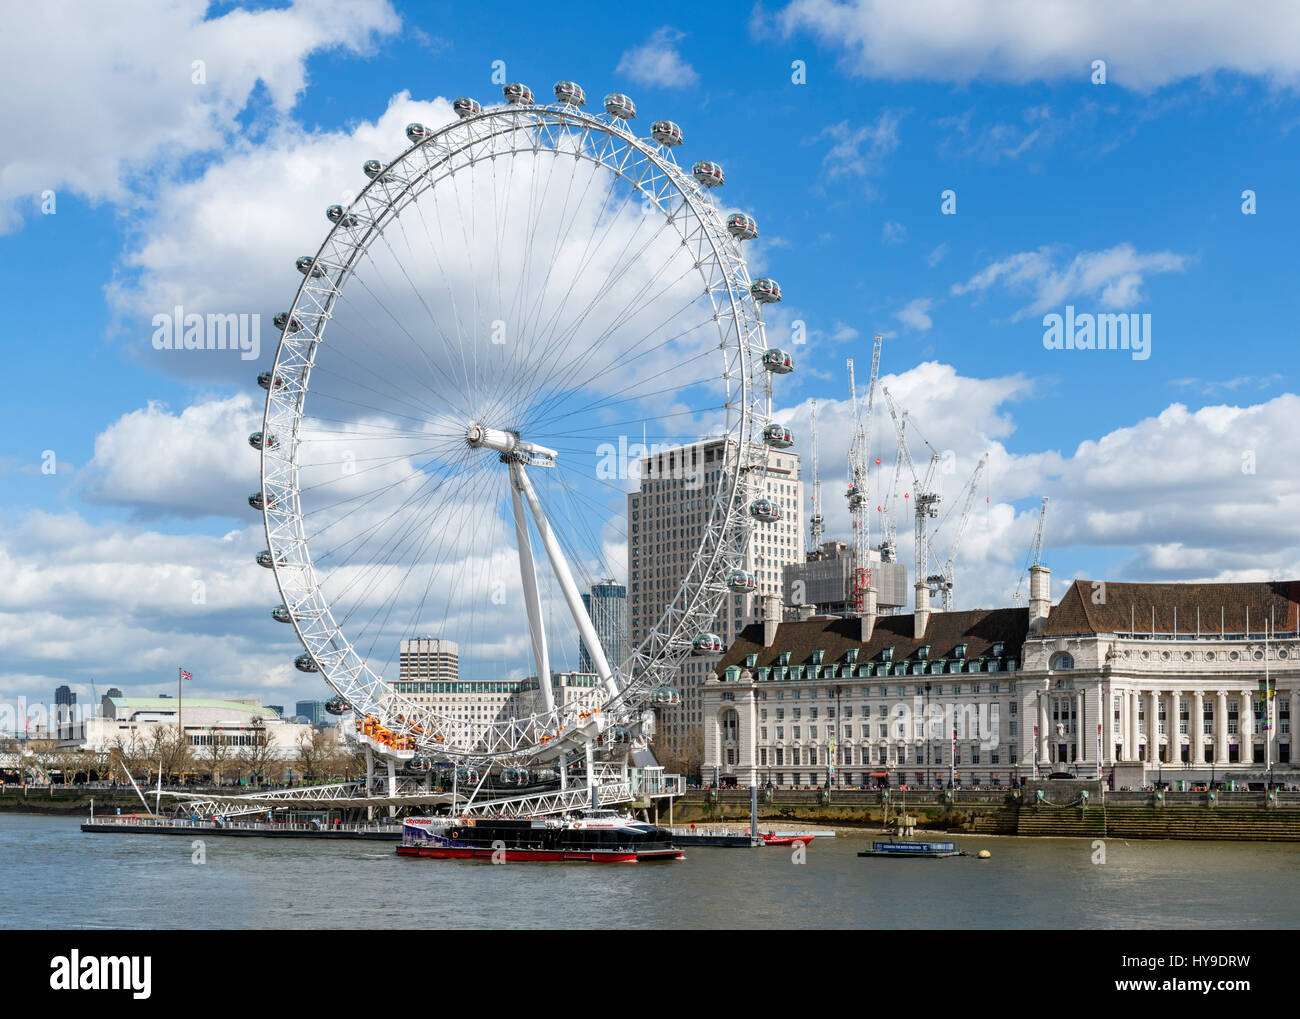 Le London Eye de Victoria Embankment, London, England, UK Banque D'Images